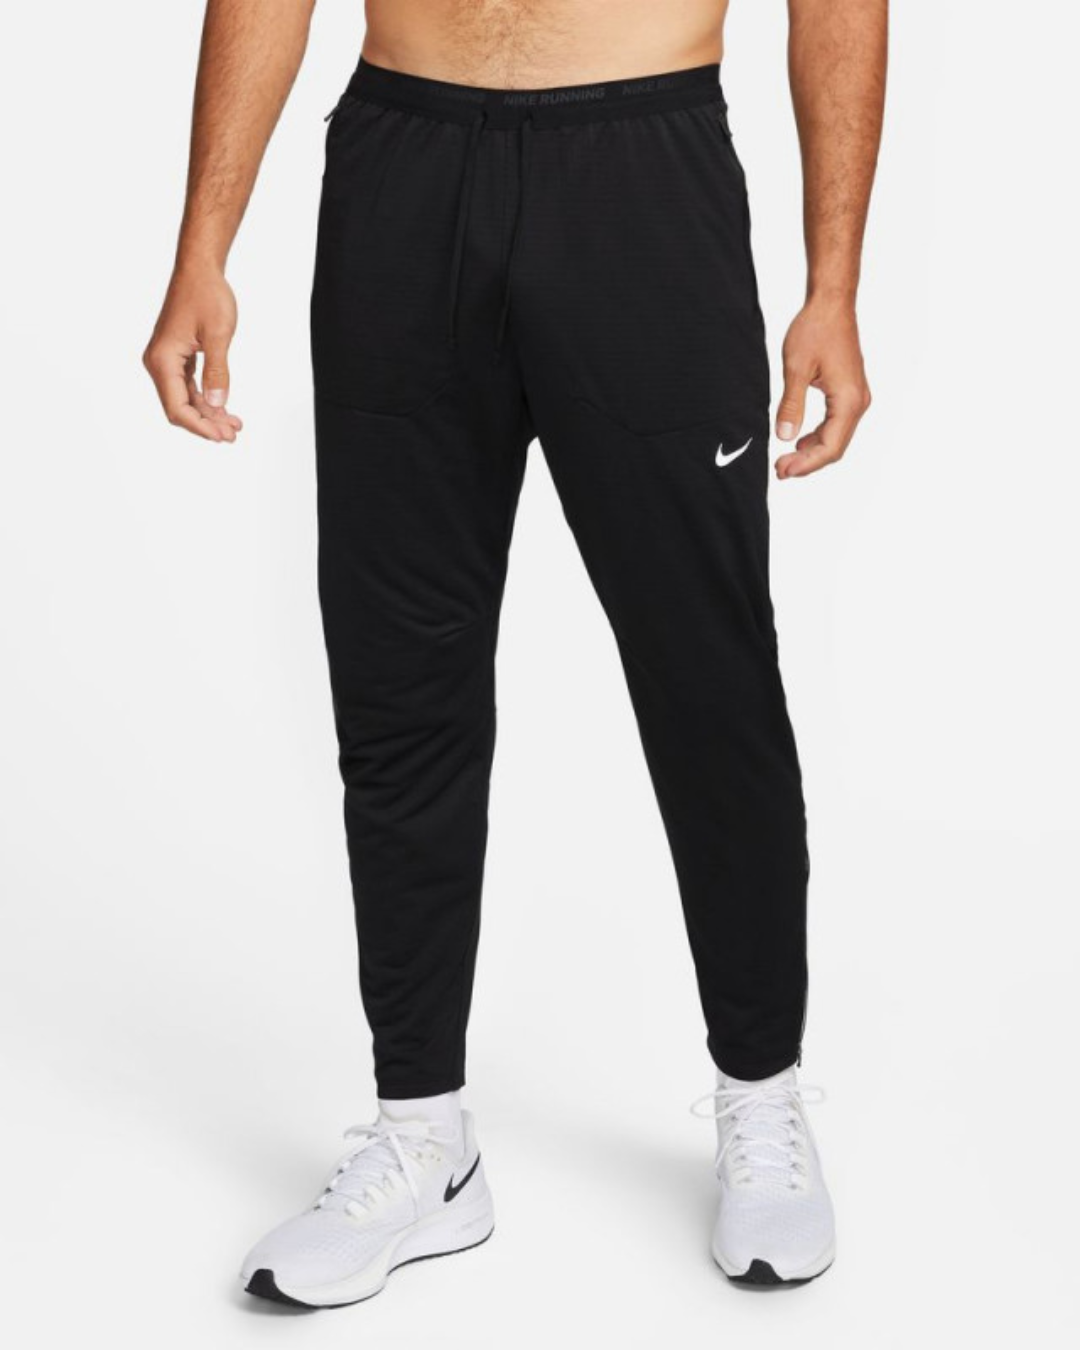 Pantaloni Nike Dri-Fit - Neri